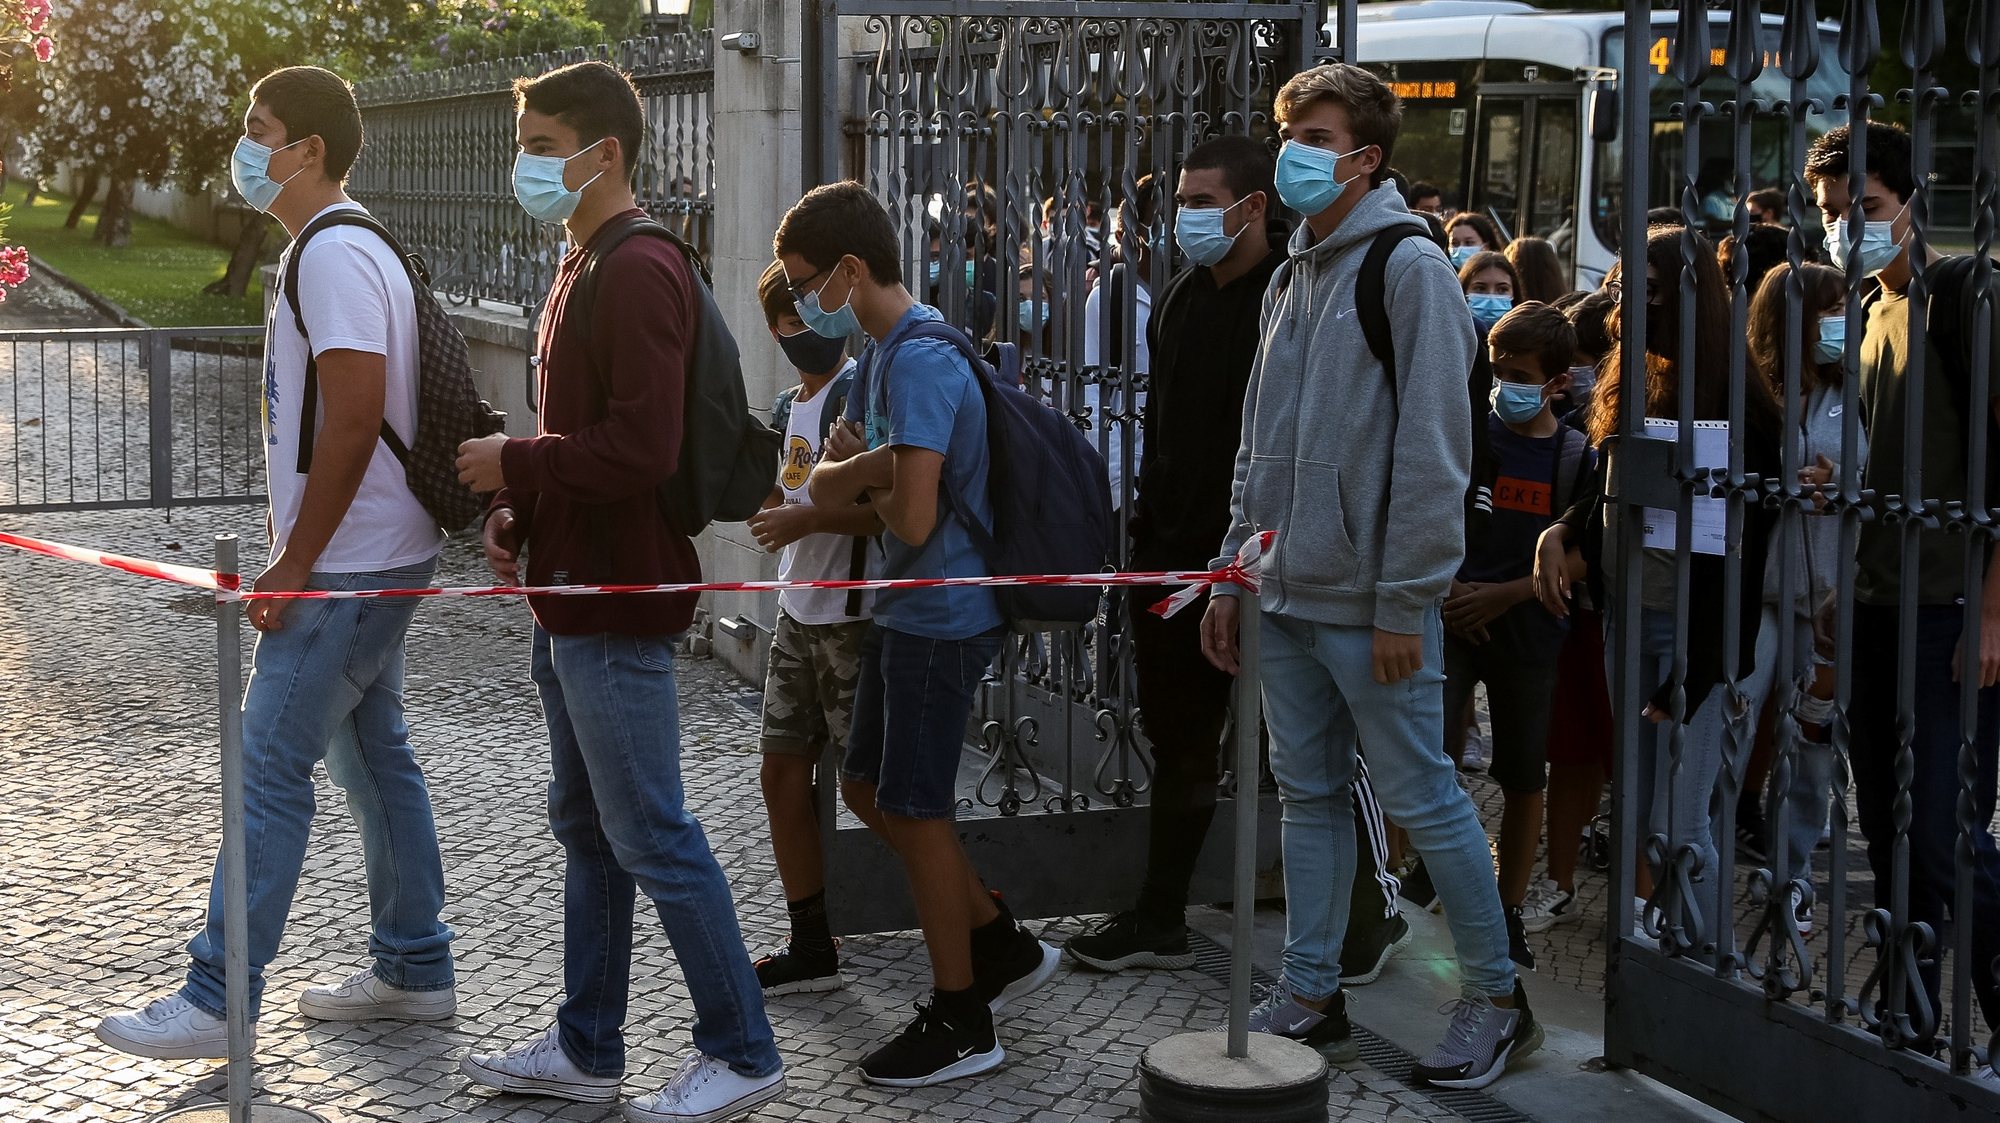 Alunos fazem fila à porta da Escola Secundária Infanta Dona Maria, no dia que assinala o regresso às aulas, com as regras no contexto de pandemia da Covid-19, em Coimbra, 17 de setembro de 2020. PAULO NOVAIS/LUSA